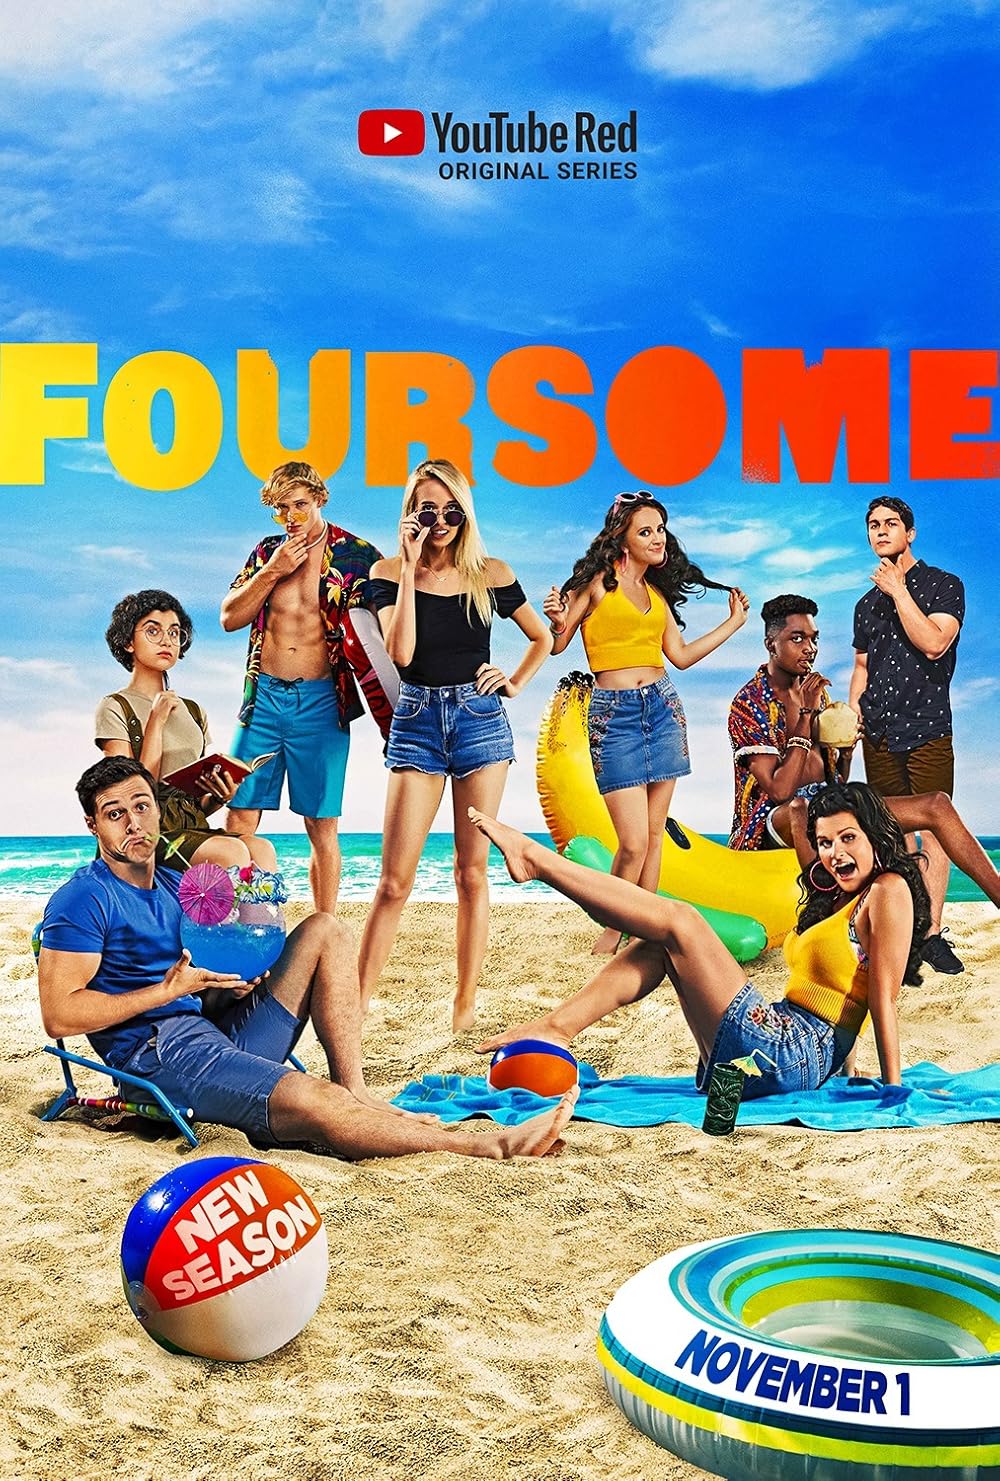 andrea mccolman recommends season 2 of foursome pic